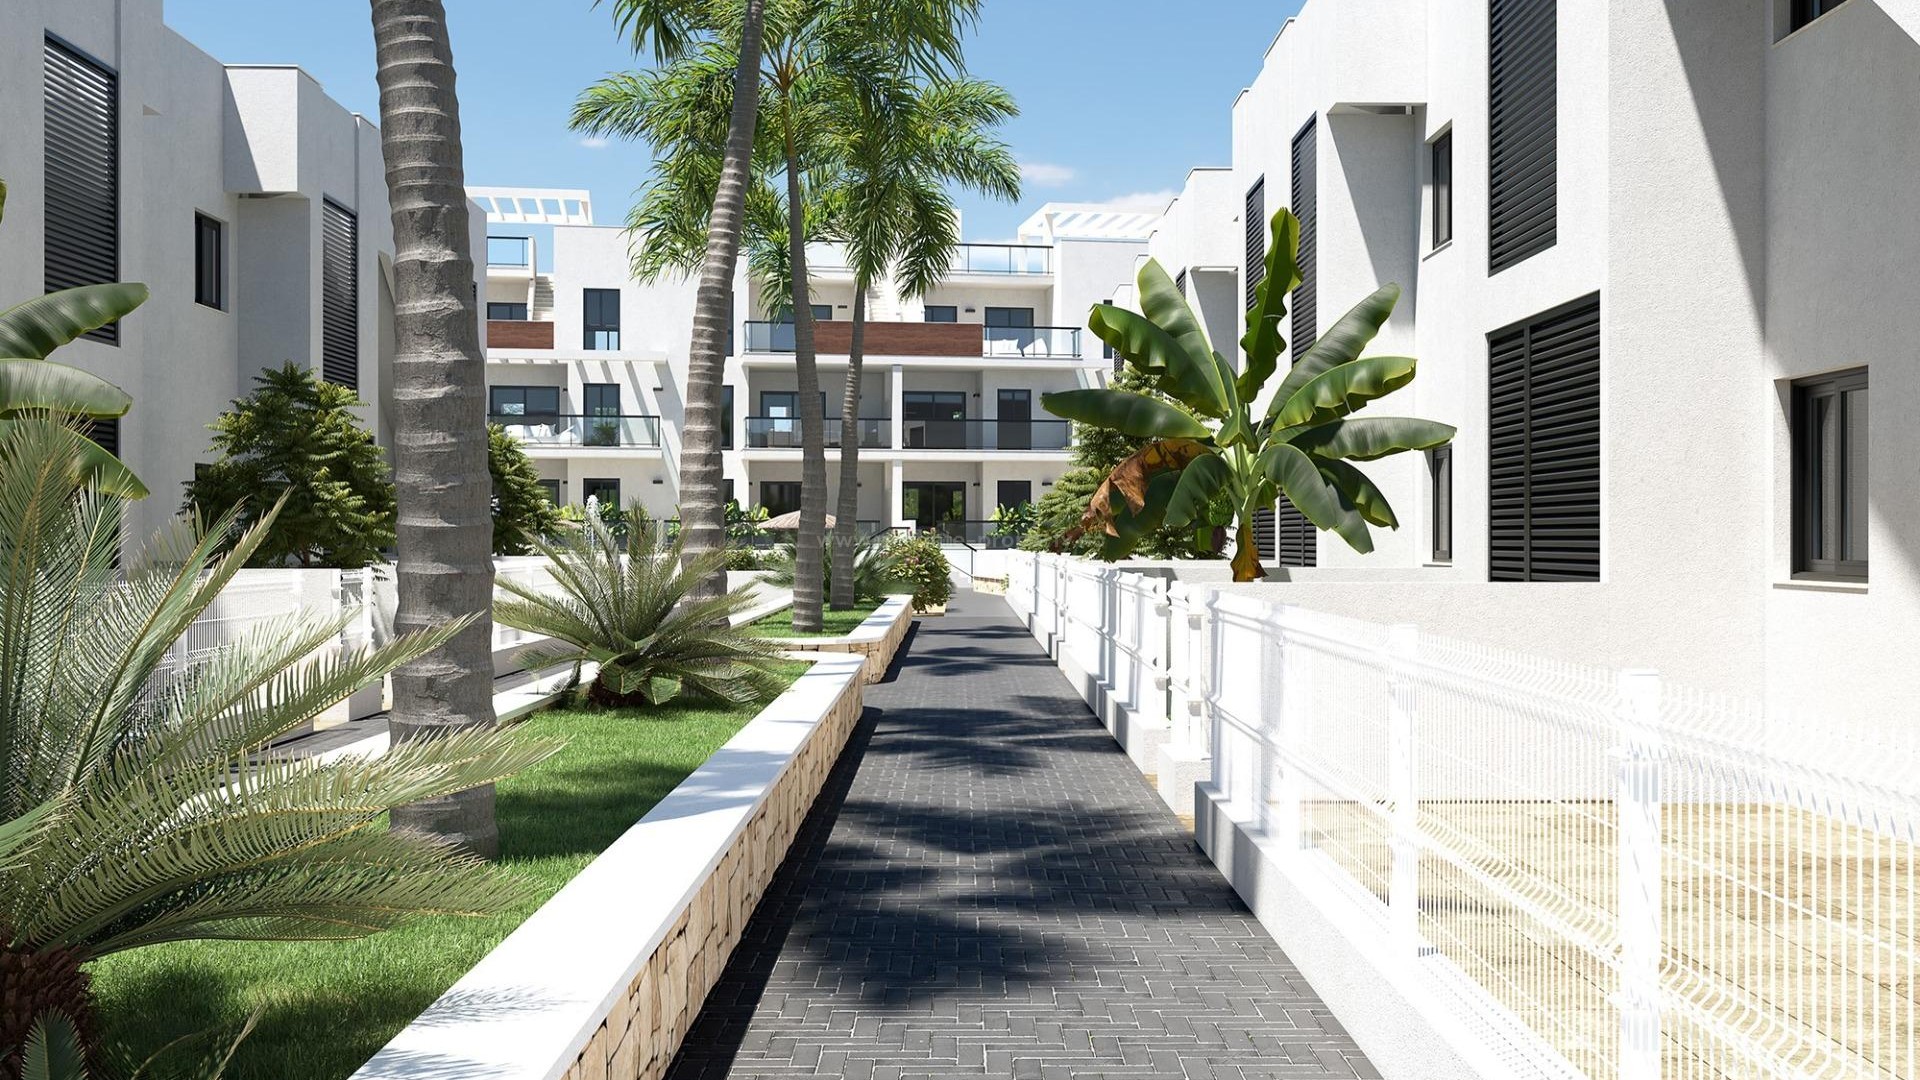 Bungalows/leiligheter i Torre de La Horadada, 300m fra strand, 2/3 soverom, 2 bad, første etasje med privat hage, toppetasjen med privat solarium